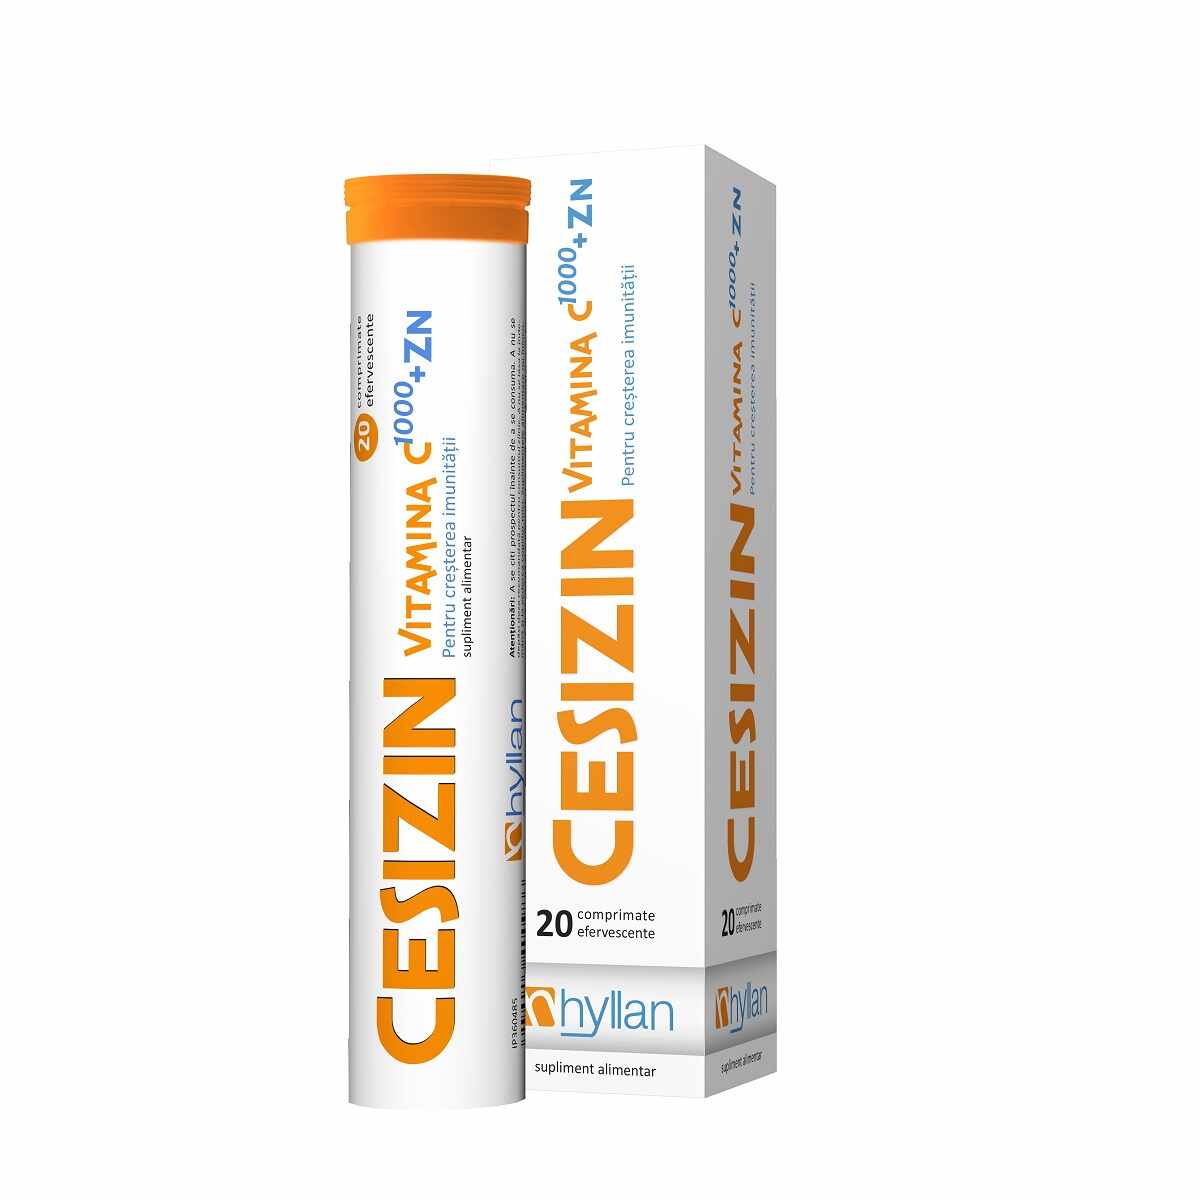 Cesizin Vitamina C 1000mg + Zinc, 20 comprimate efervescente, Hyllan